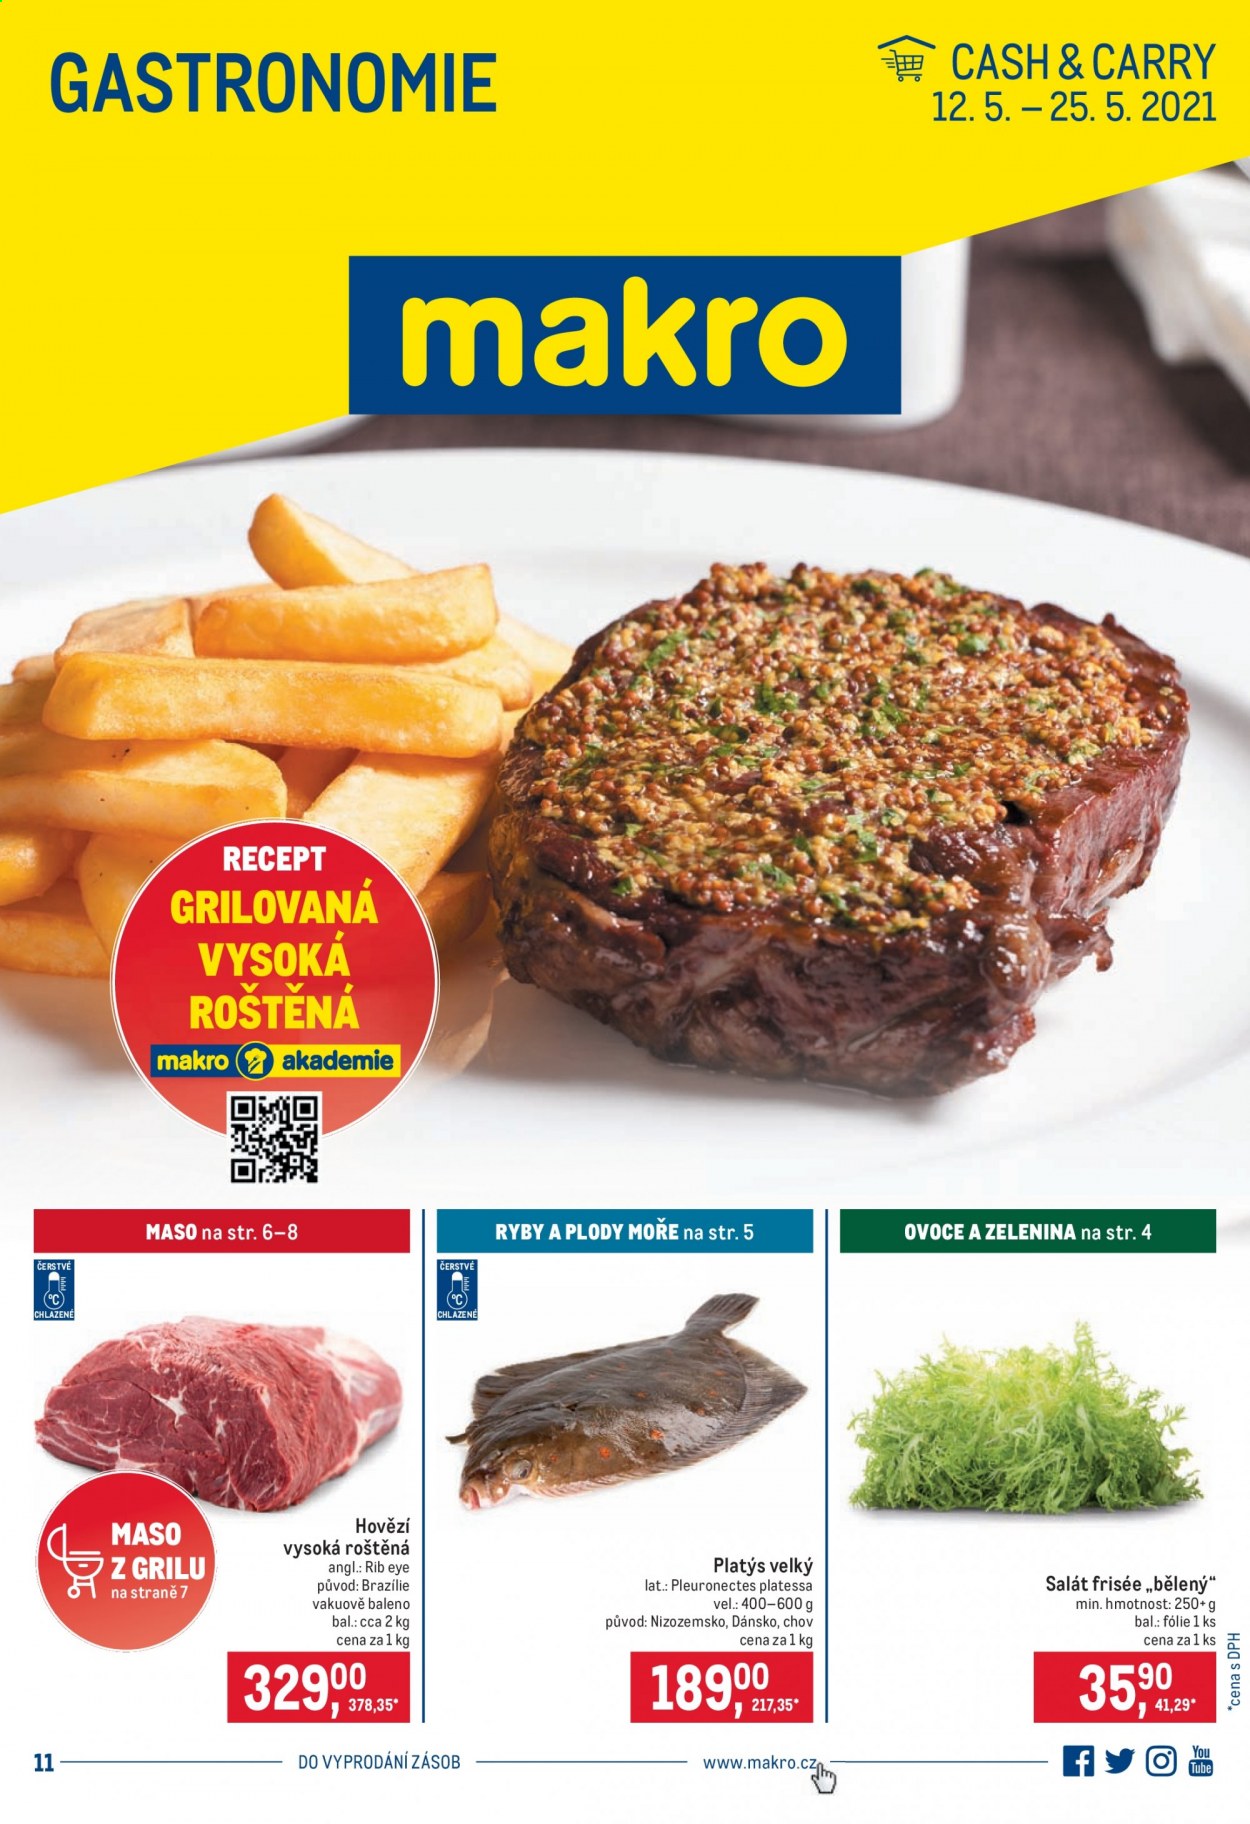 thumbnail - Leták MAKRO - 12.5.2021 - 25.5.2021 - Produkty v akci - platýs, platýs velký, salát, hovězí maso, hovězí vysoká roštěná, rib eye steak. Strana 1.